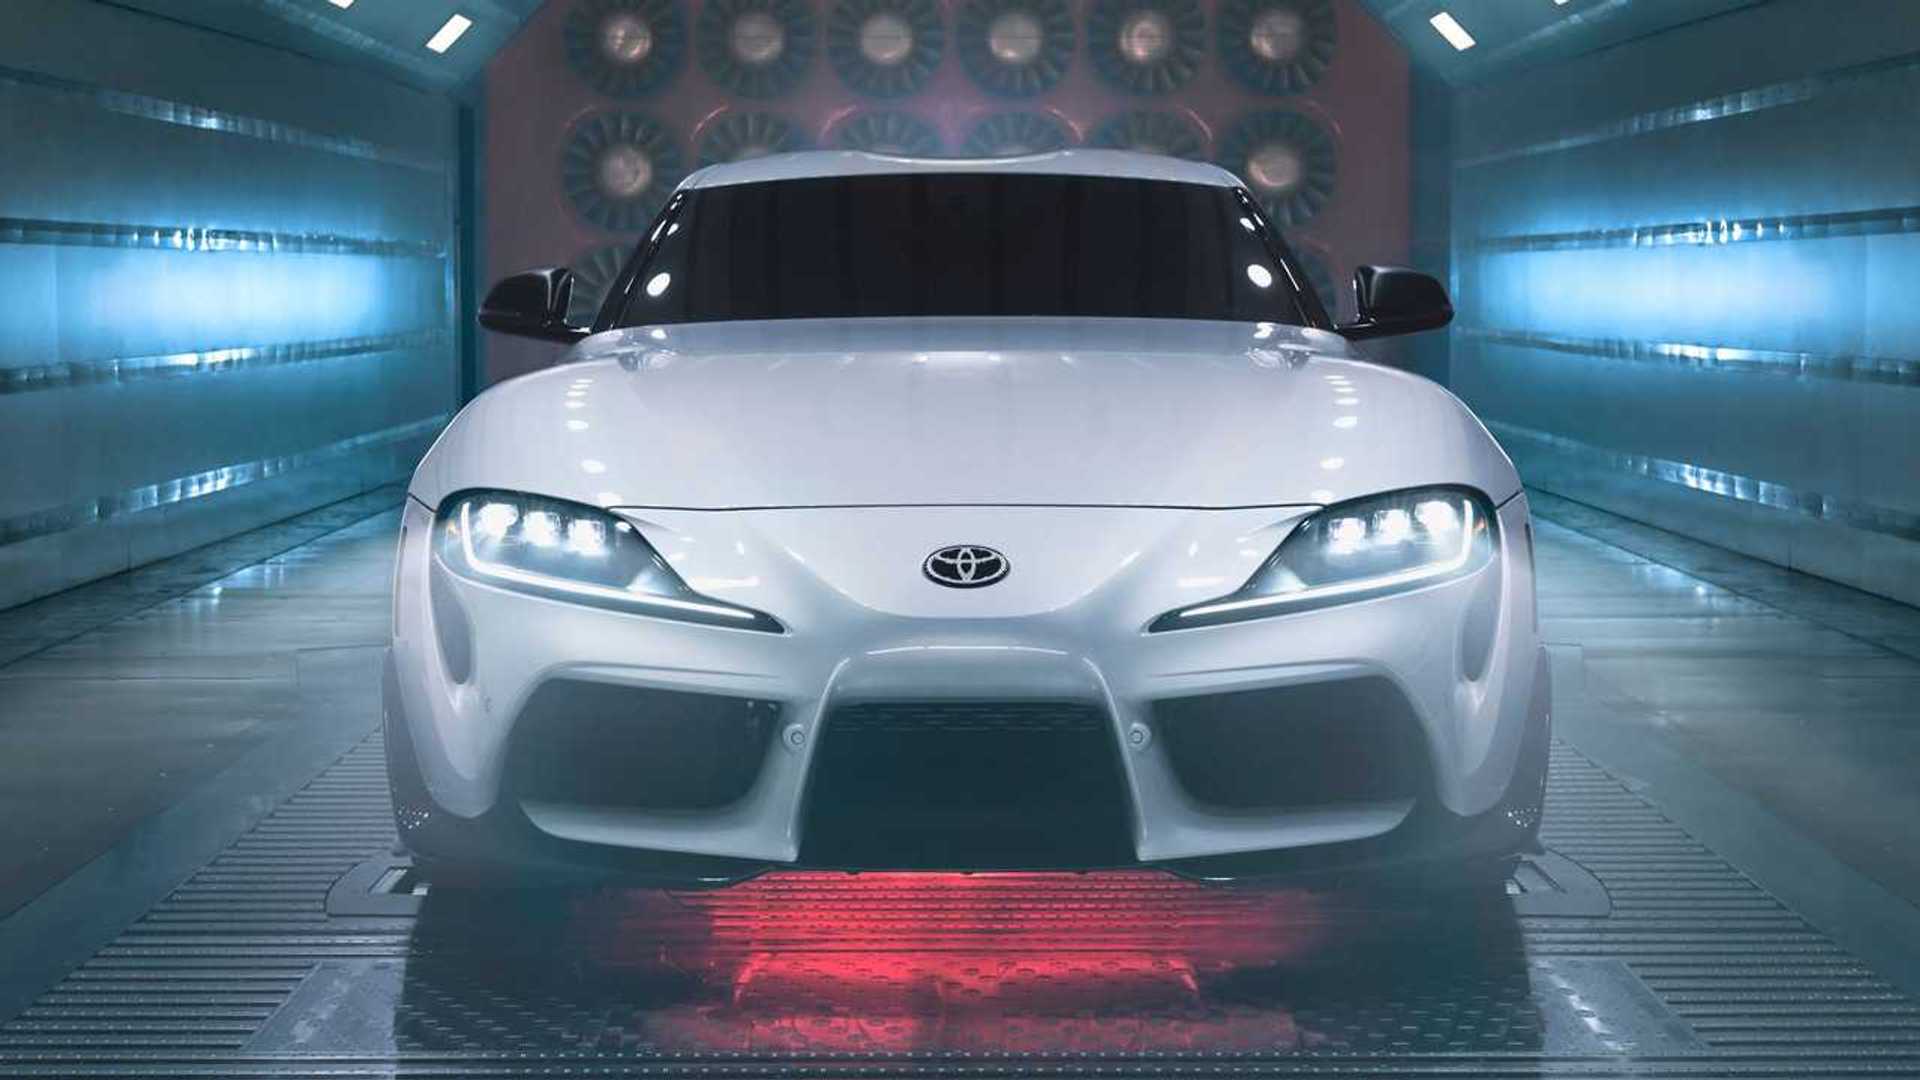 Harga Mobil Supra Terbaru. Toyota Supra A91-CF Edition 2022 adalah Supra Termahal Saat Ini